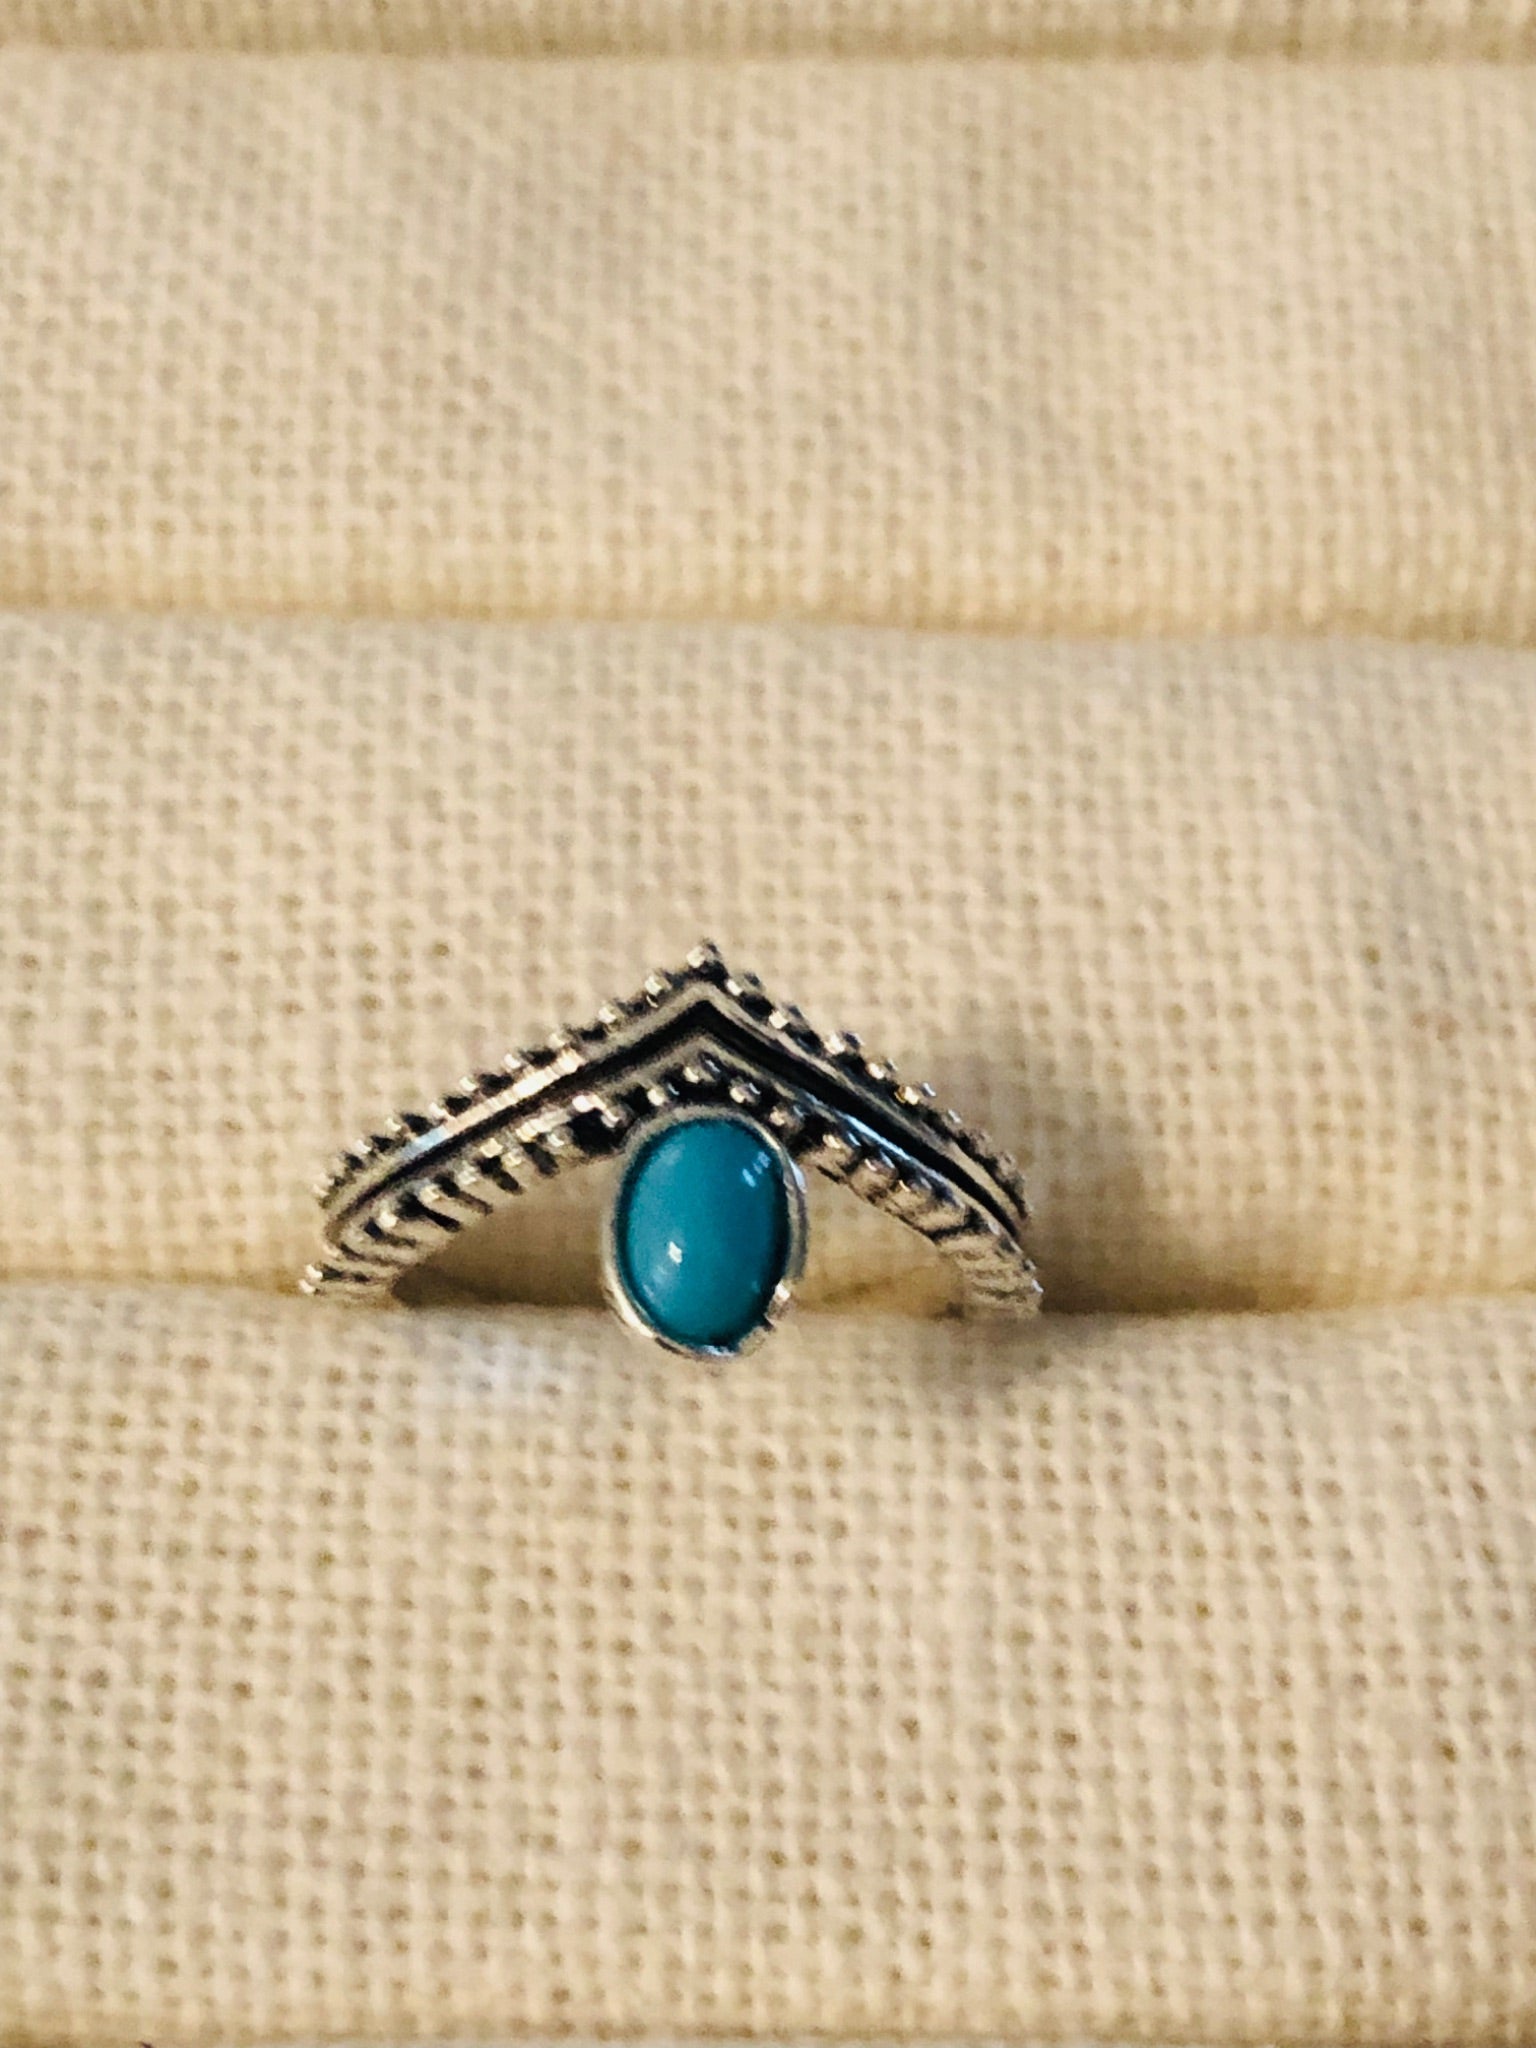 015-138 “V” shaped turquoise Ring - 1